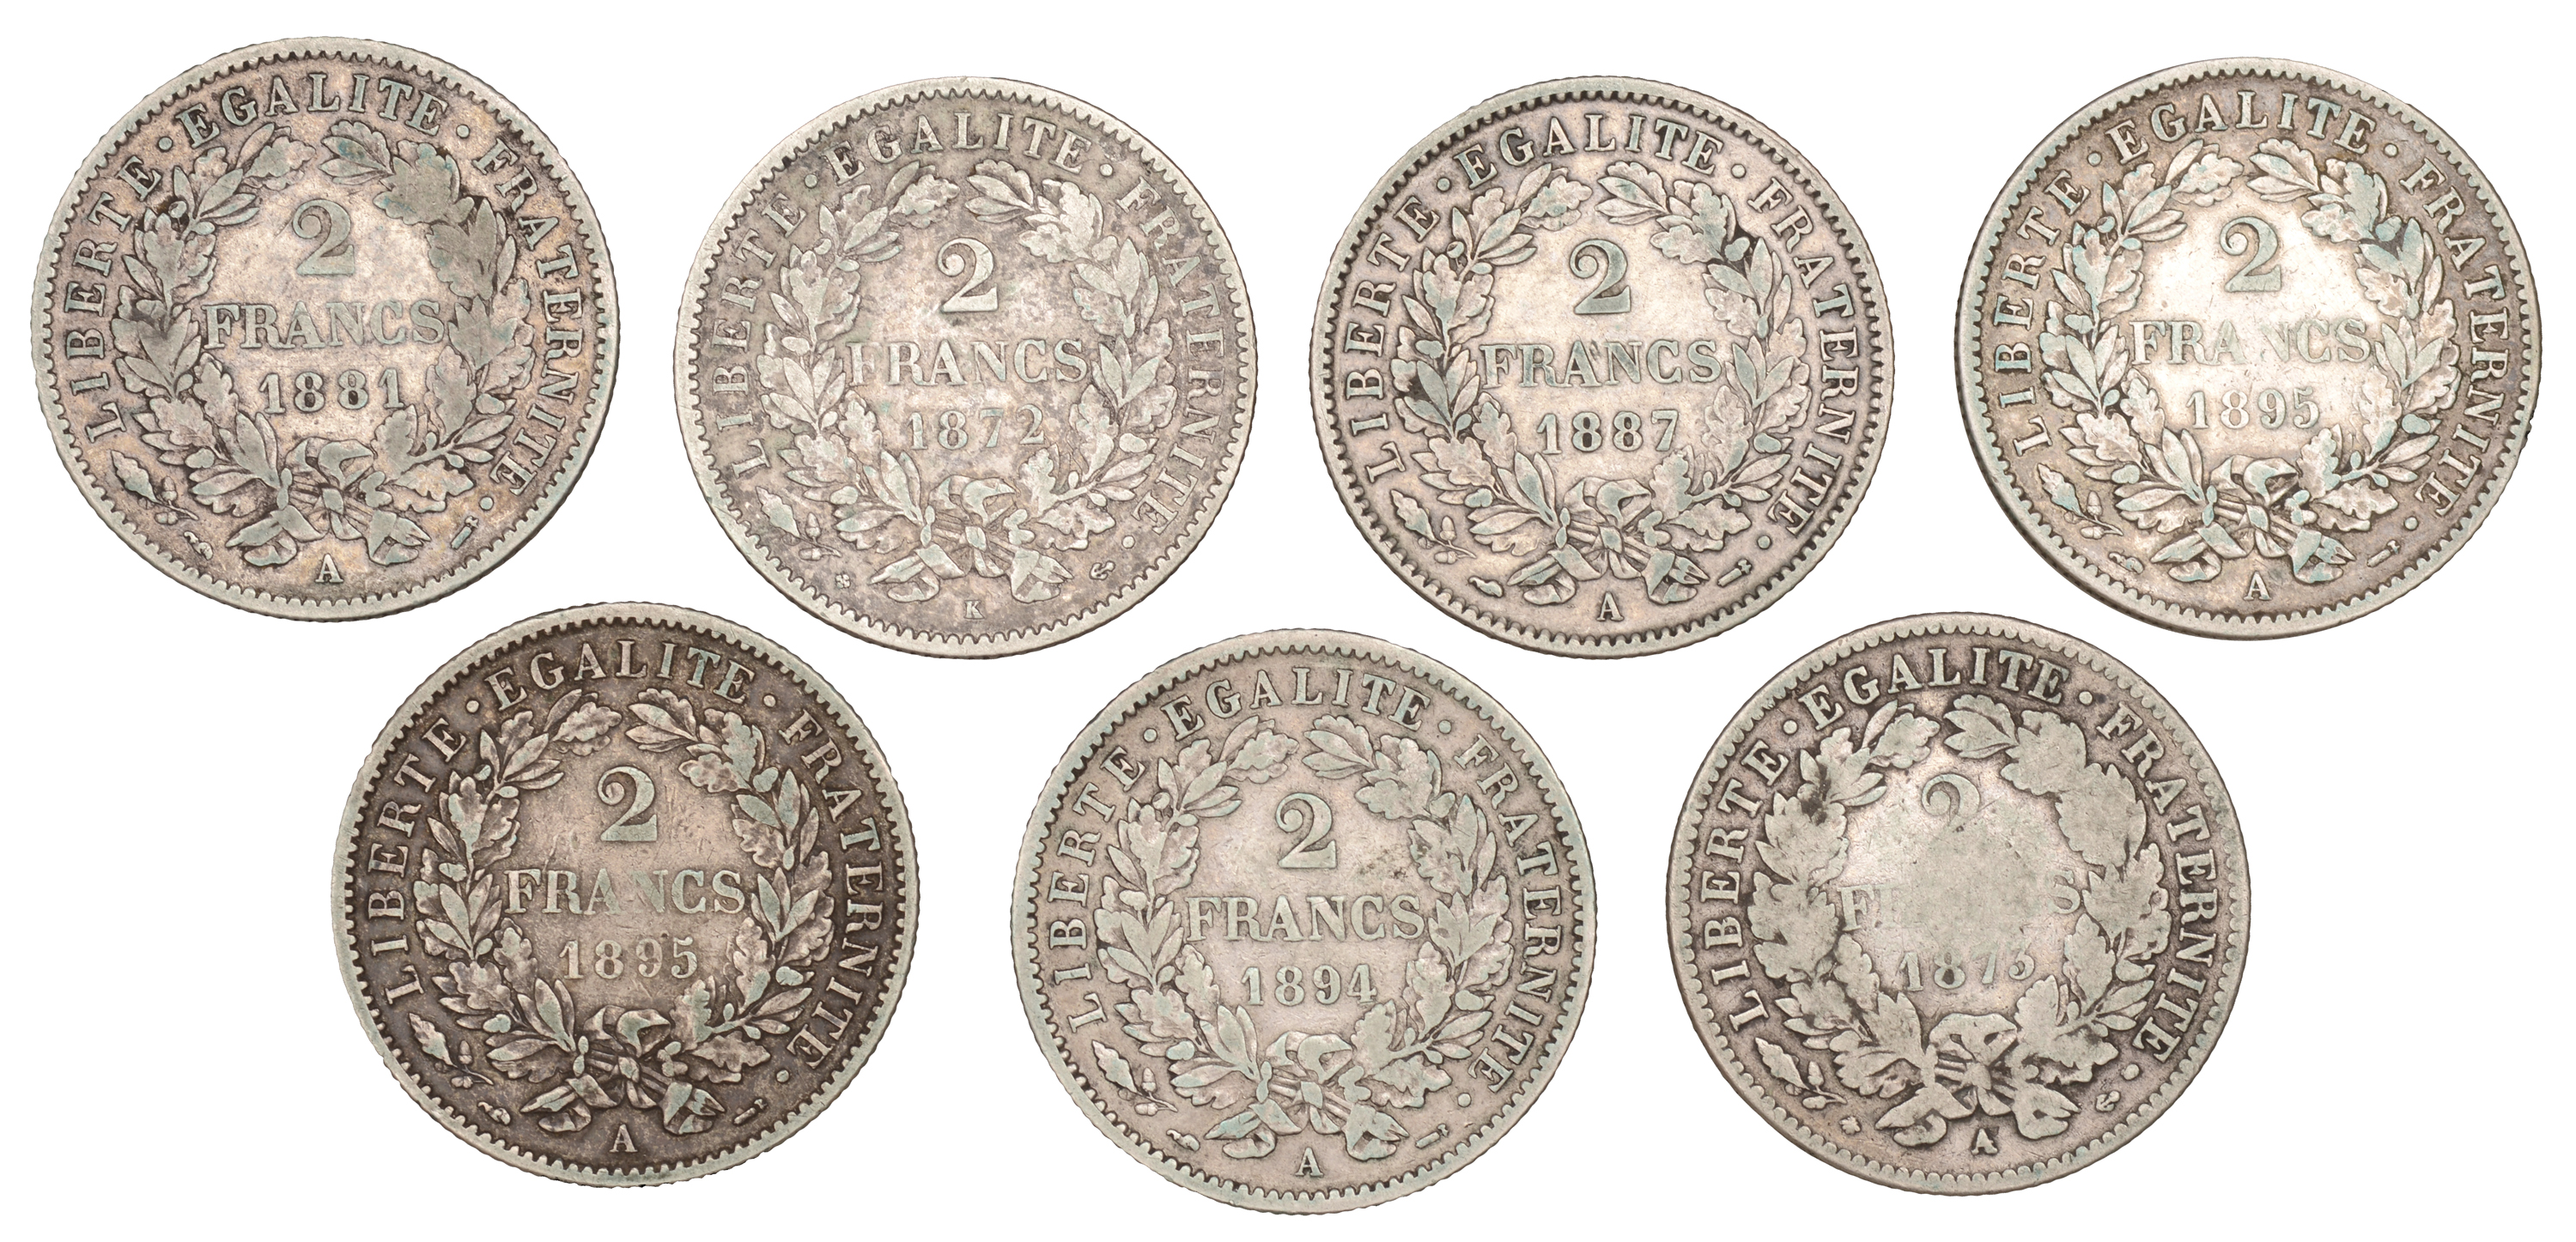 France, Third Republic (1871-1940), 2 Francs (7), 1872k, 1873a, 1881a, 1887a, 1894a, 1895a (... - Image 2 of 2